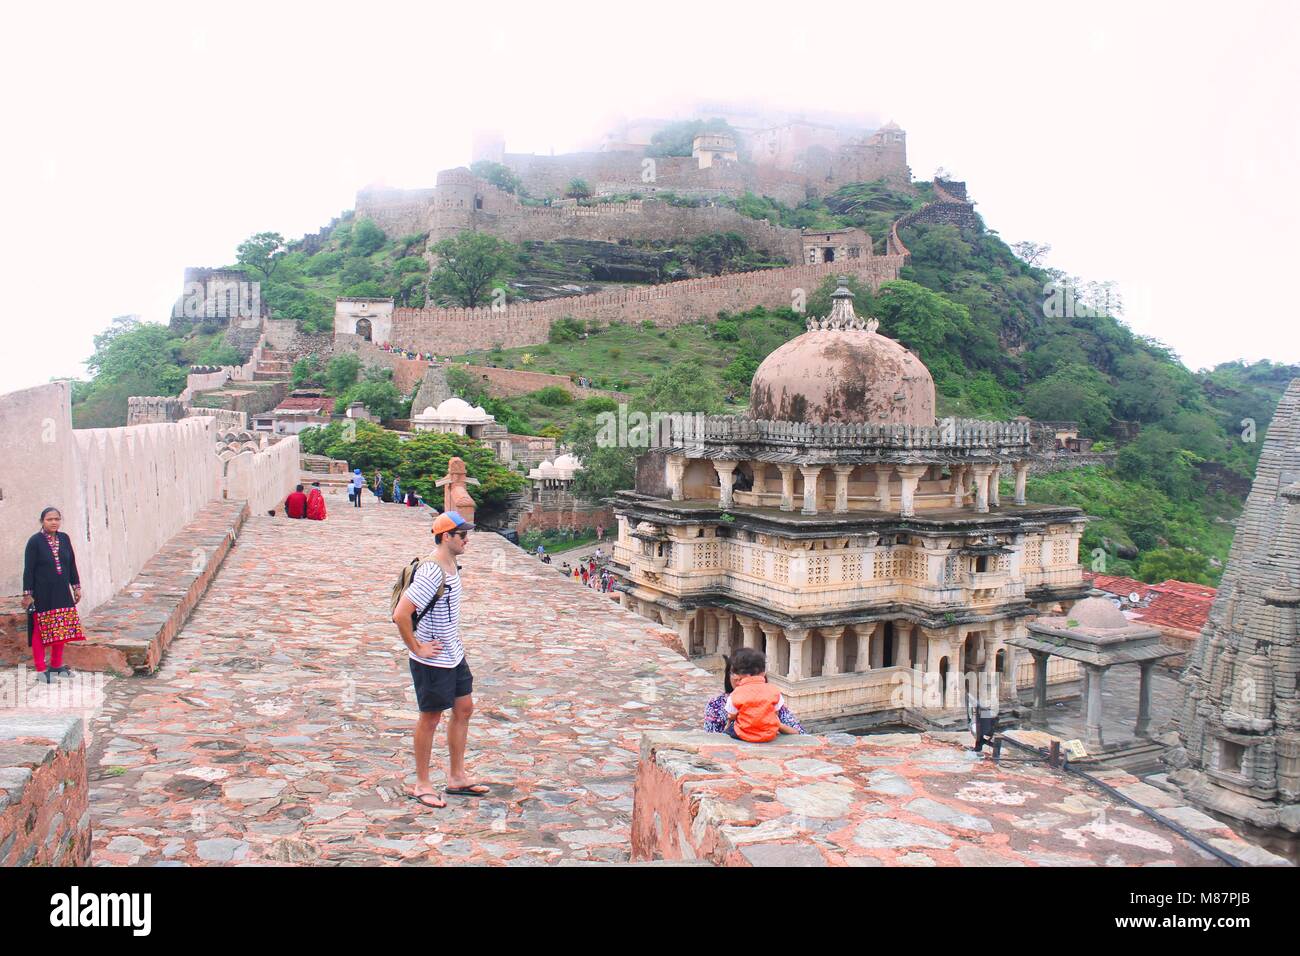 Luogo di nascita di Mewars leggendario re, Maharana Pratap. Kumbhalgarh Fort, Grande Muraglia di India, durante la stagione delle piogge, Rajasthan Turismo, Fort del Rajasthan , Foto Stock